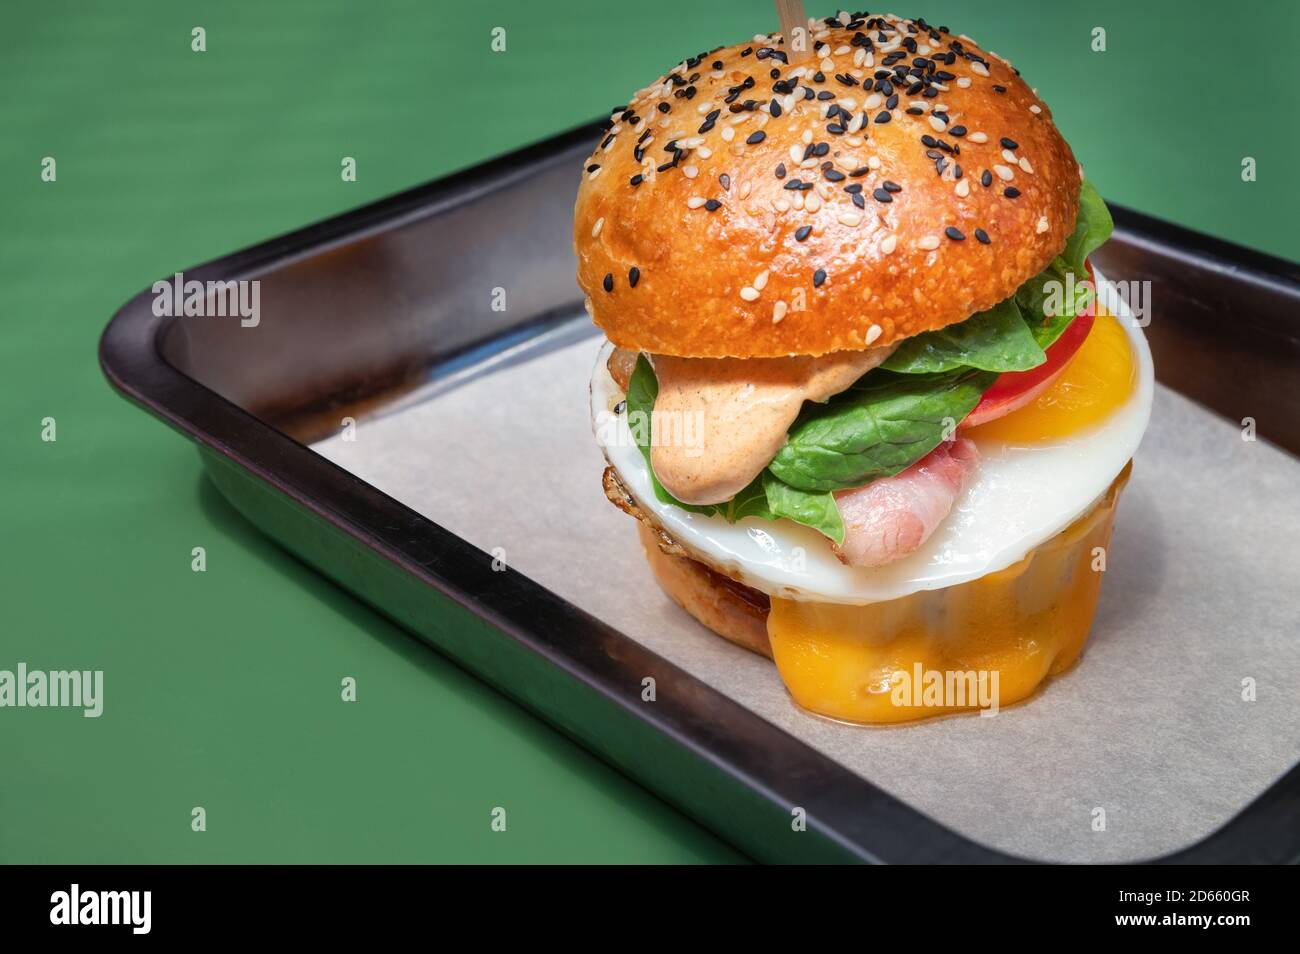 Primo piano gustoso hamburger con diversi ripieno servito sul vassoio Foto Stock